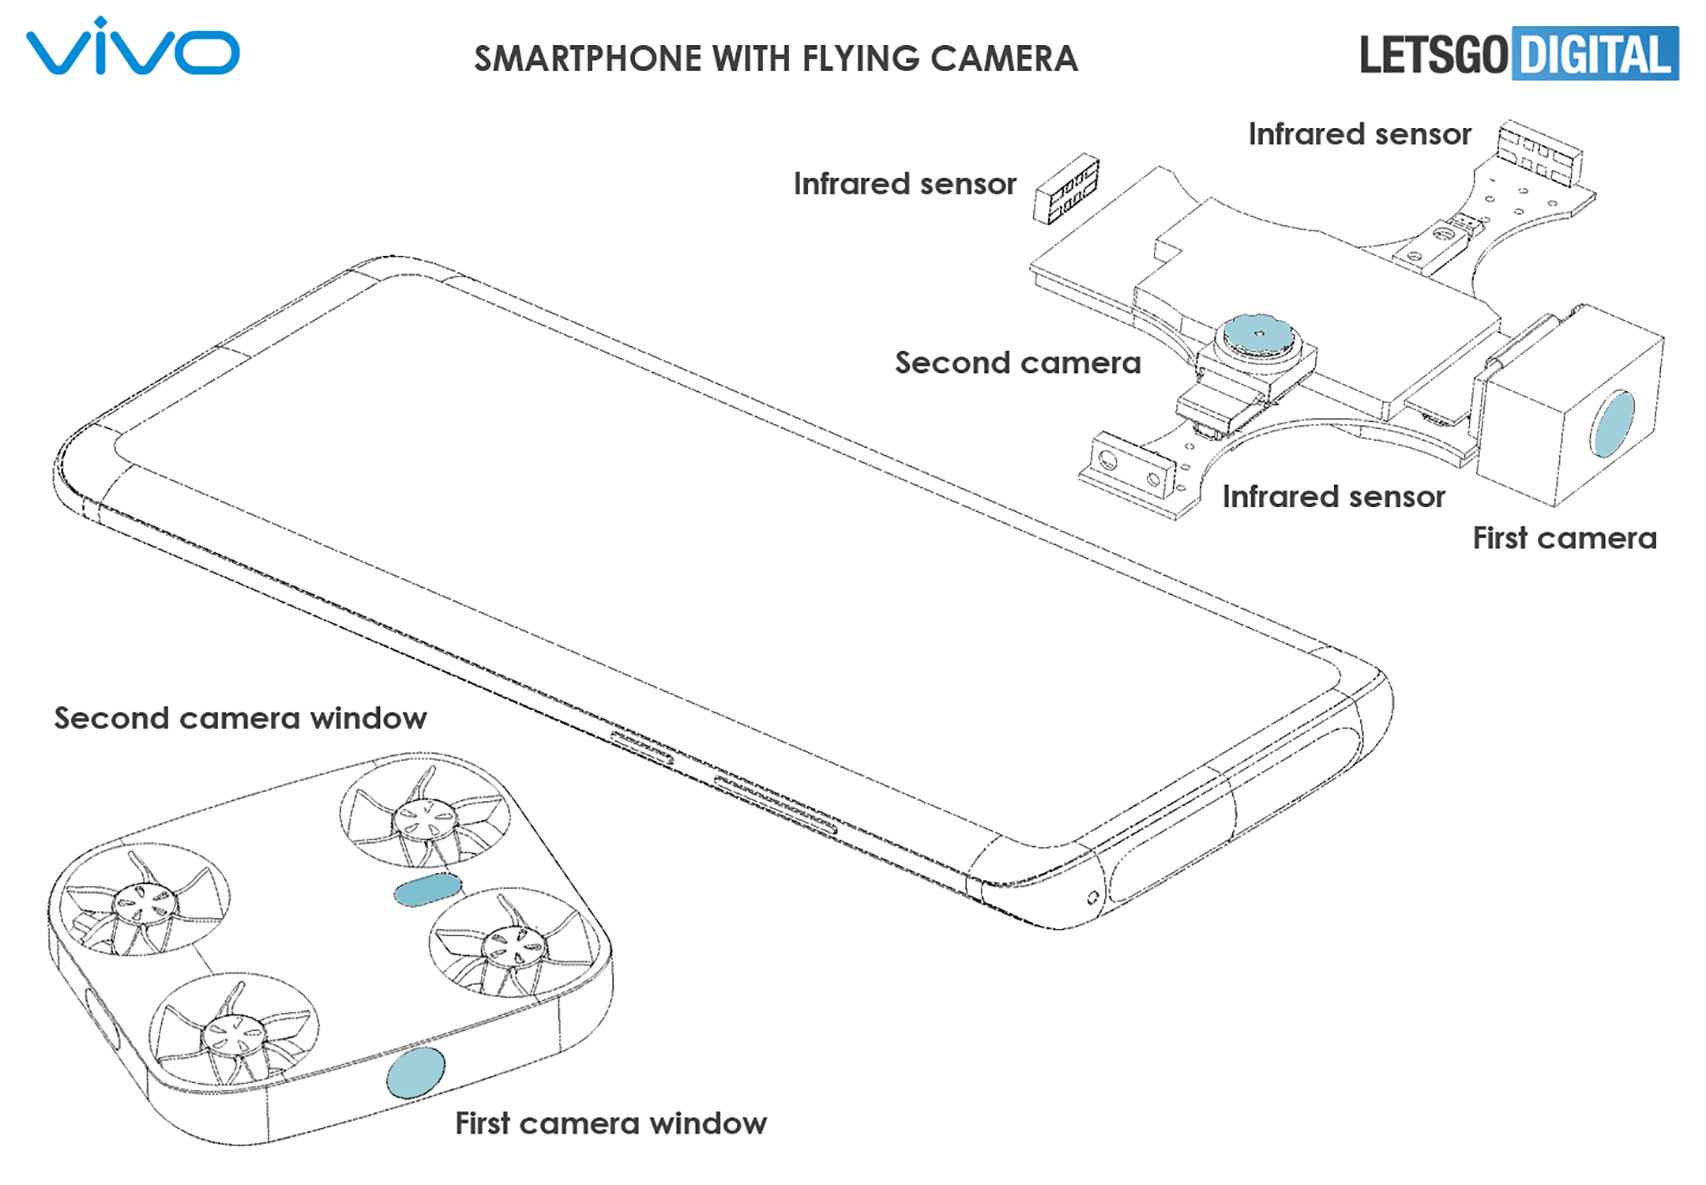 La patente del móvil con dron de Vivo